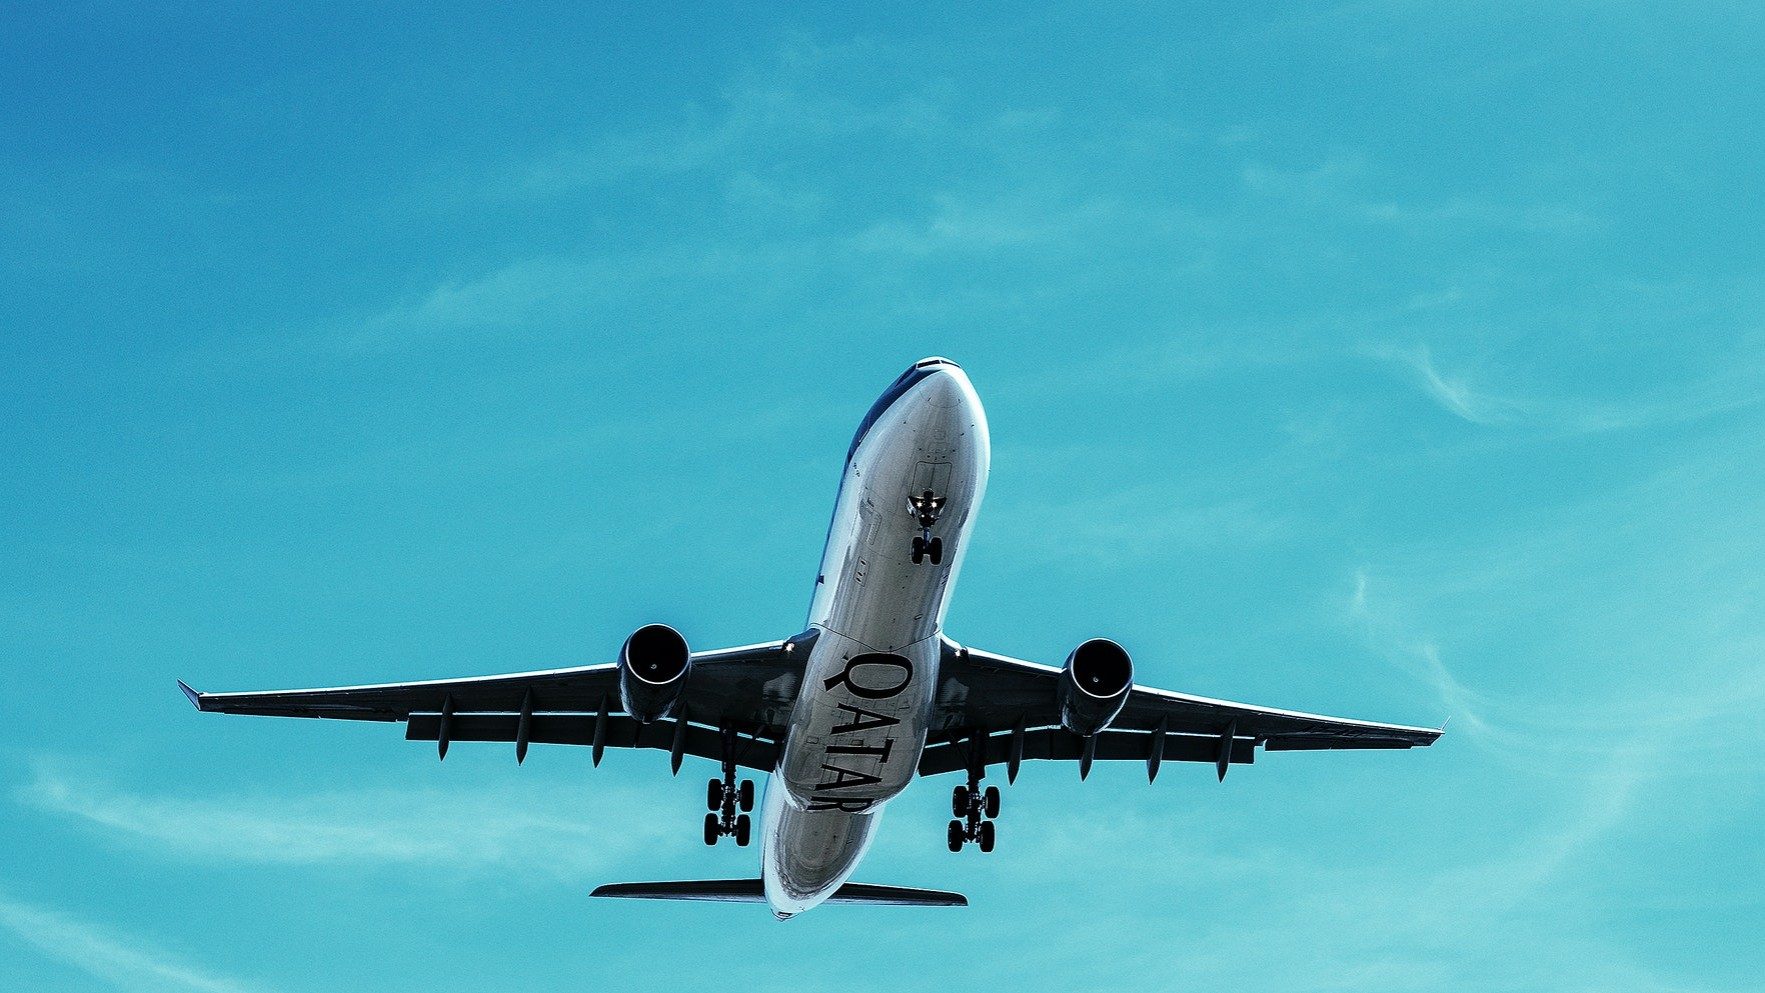 Ein Qatar Airways-Flugzeug setzt vor blauem Himmel zur Landung an